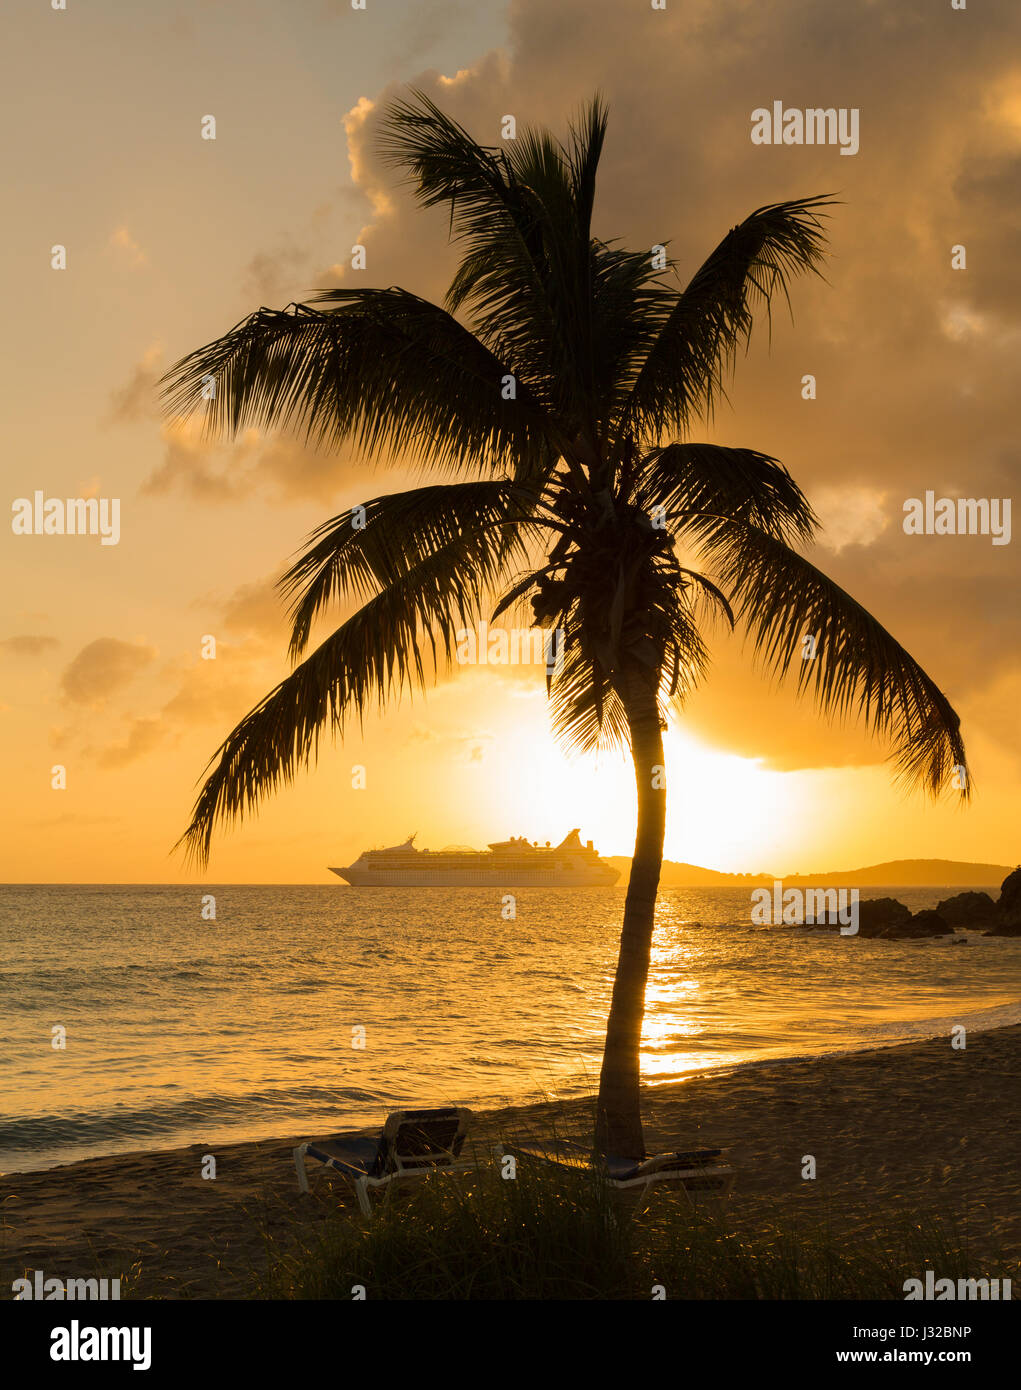 Palmier au coucher du soleil, la baie de Frenchmans, Saint Thomas, US Virgin Islands, Caribbean avec bateau de croisière sur l'horizon Banque D'Images